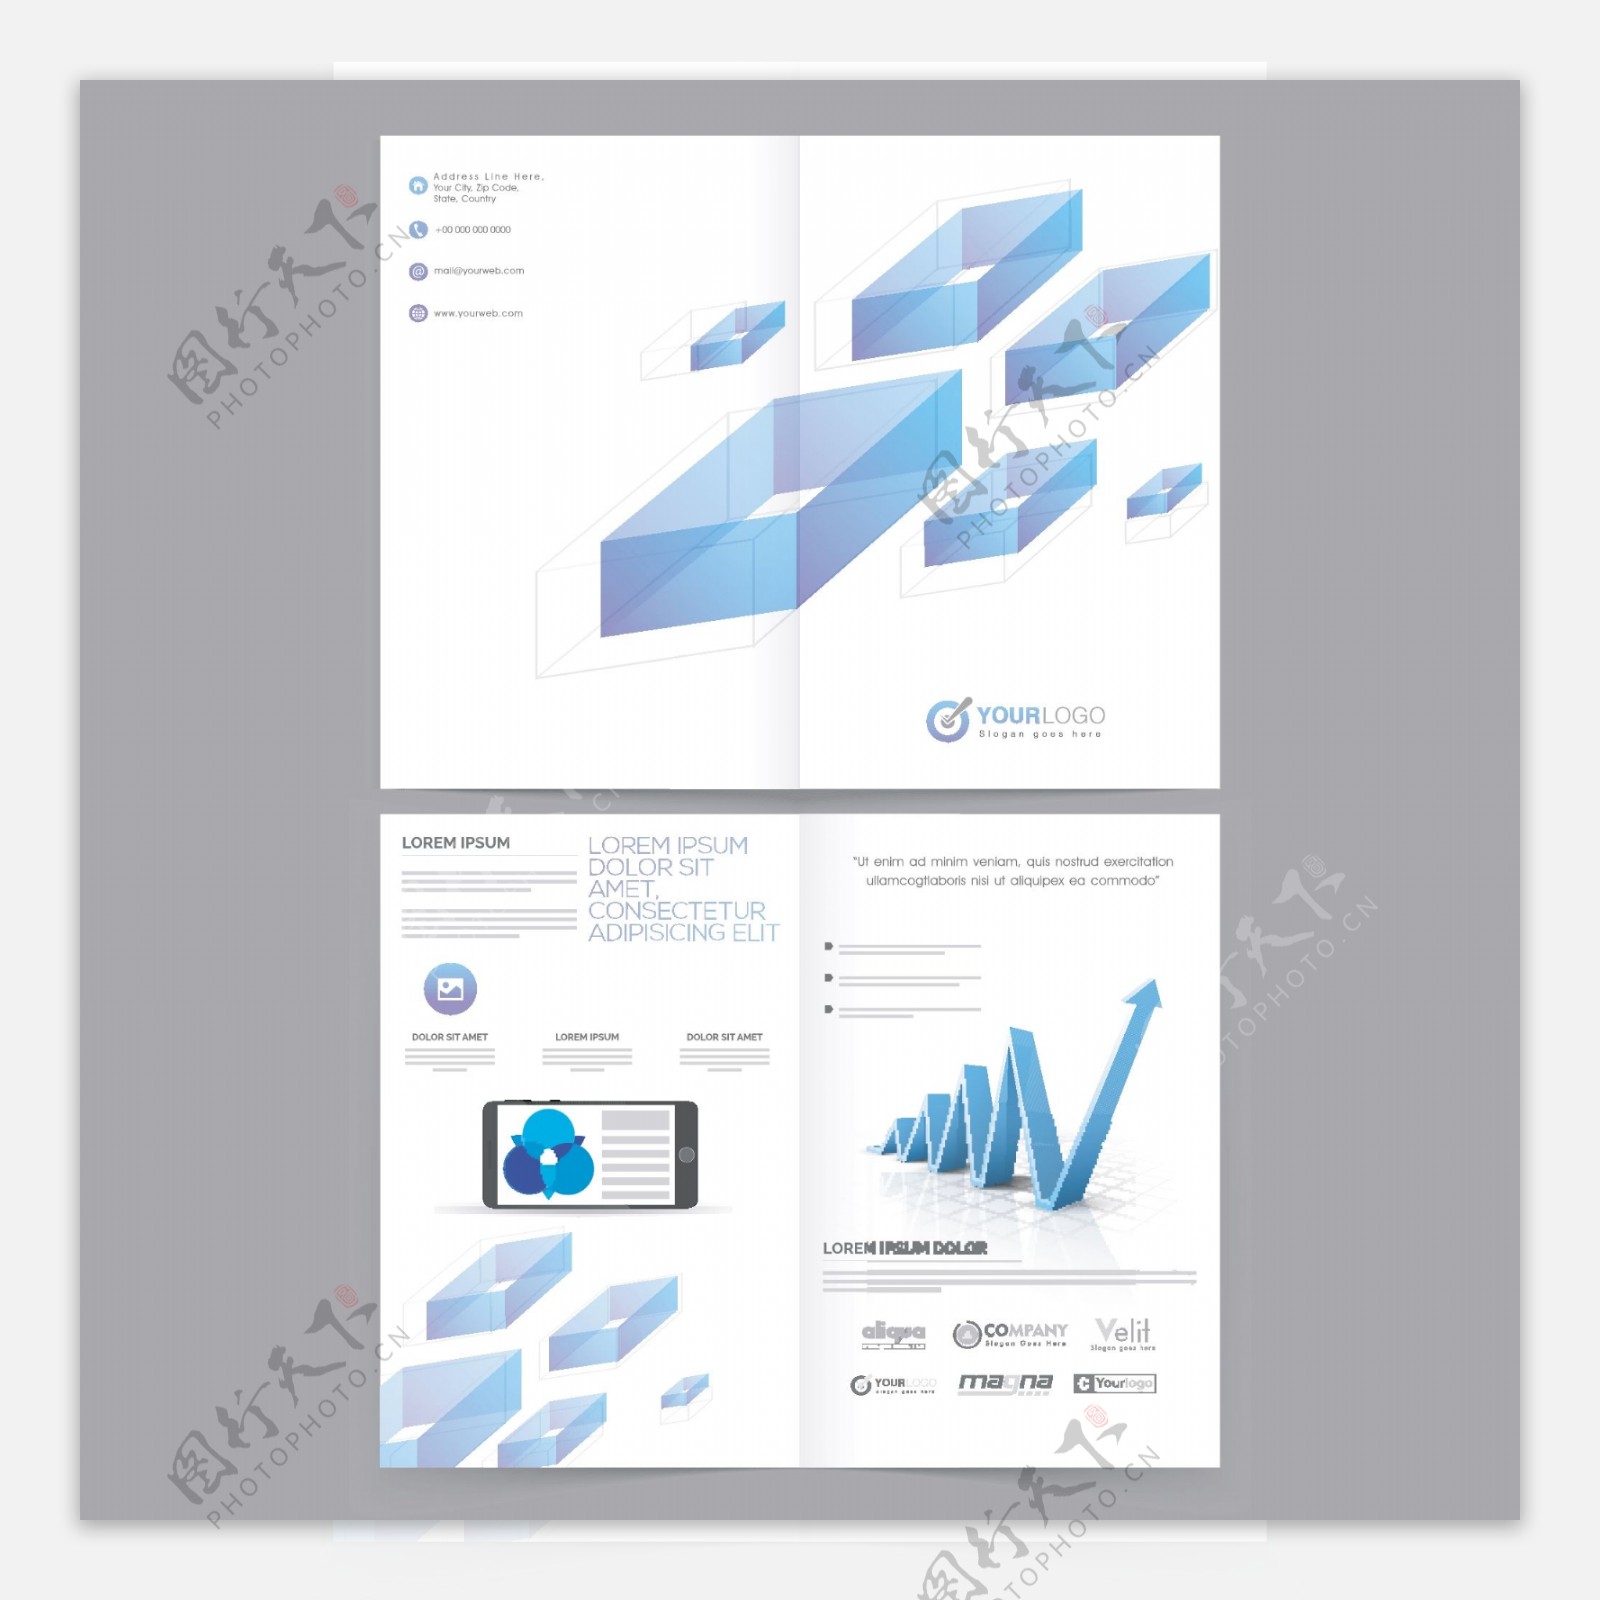 企业年度报告的小册子蓝色抽象的几何元素和图表增长箭公司模板布局